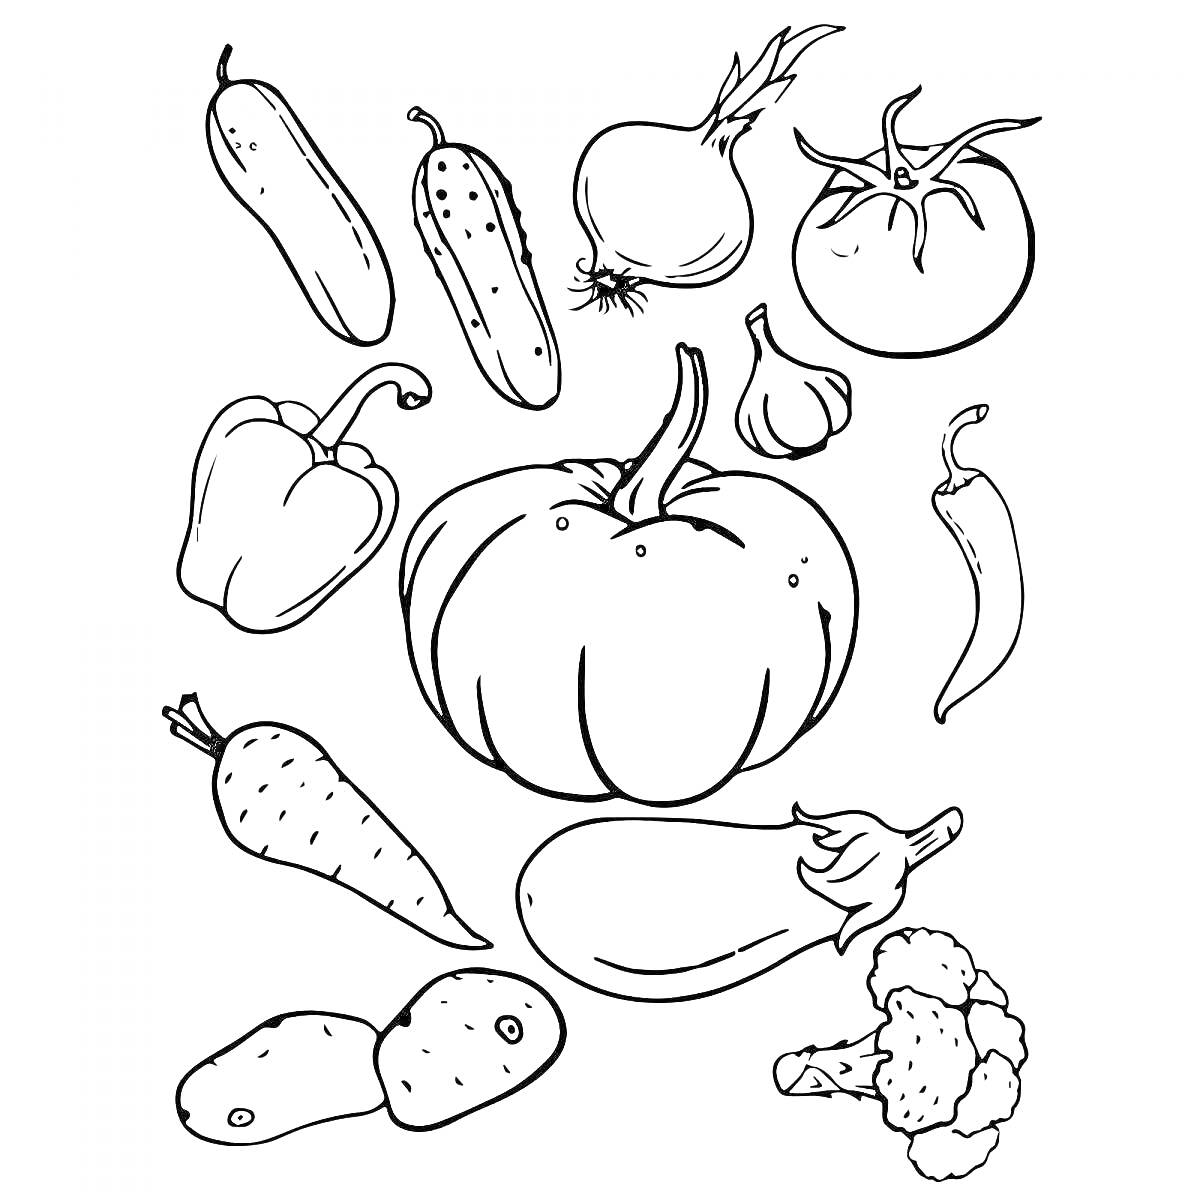 Раскраска Раскраска с овощами: кабачок, огурец, лук, помидор, перец, тыква, чеснок, морковь, баклажан, картофель, брокколи.